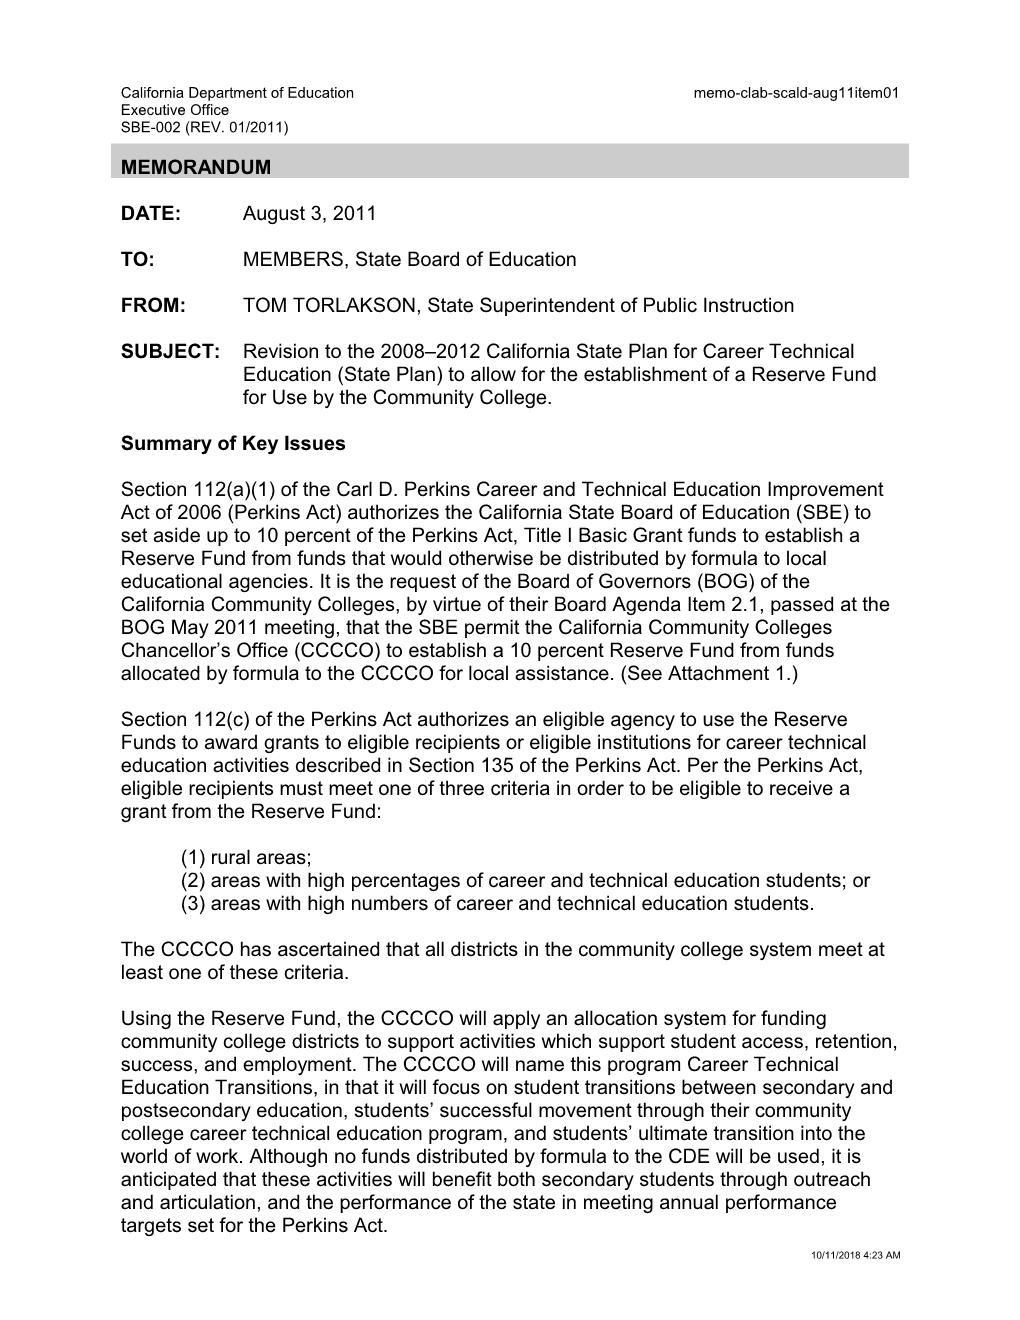 August 2011 Memorandum SCALD Item 1 - Information Memorandum (CA State Board of Education)